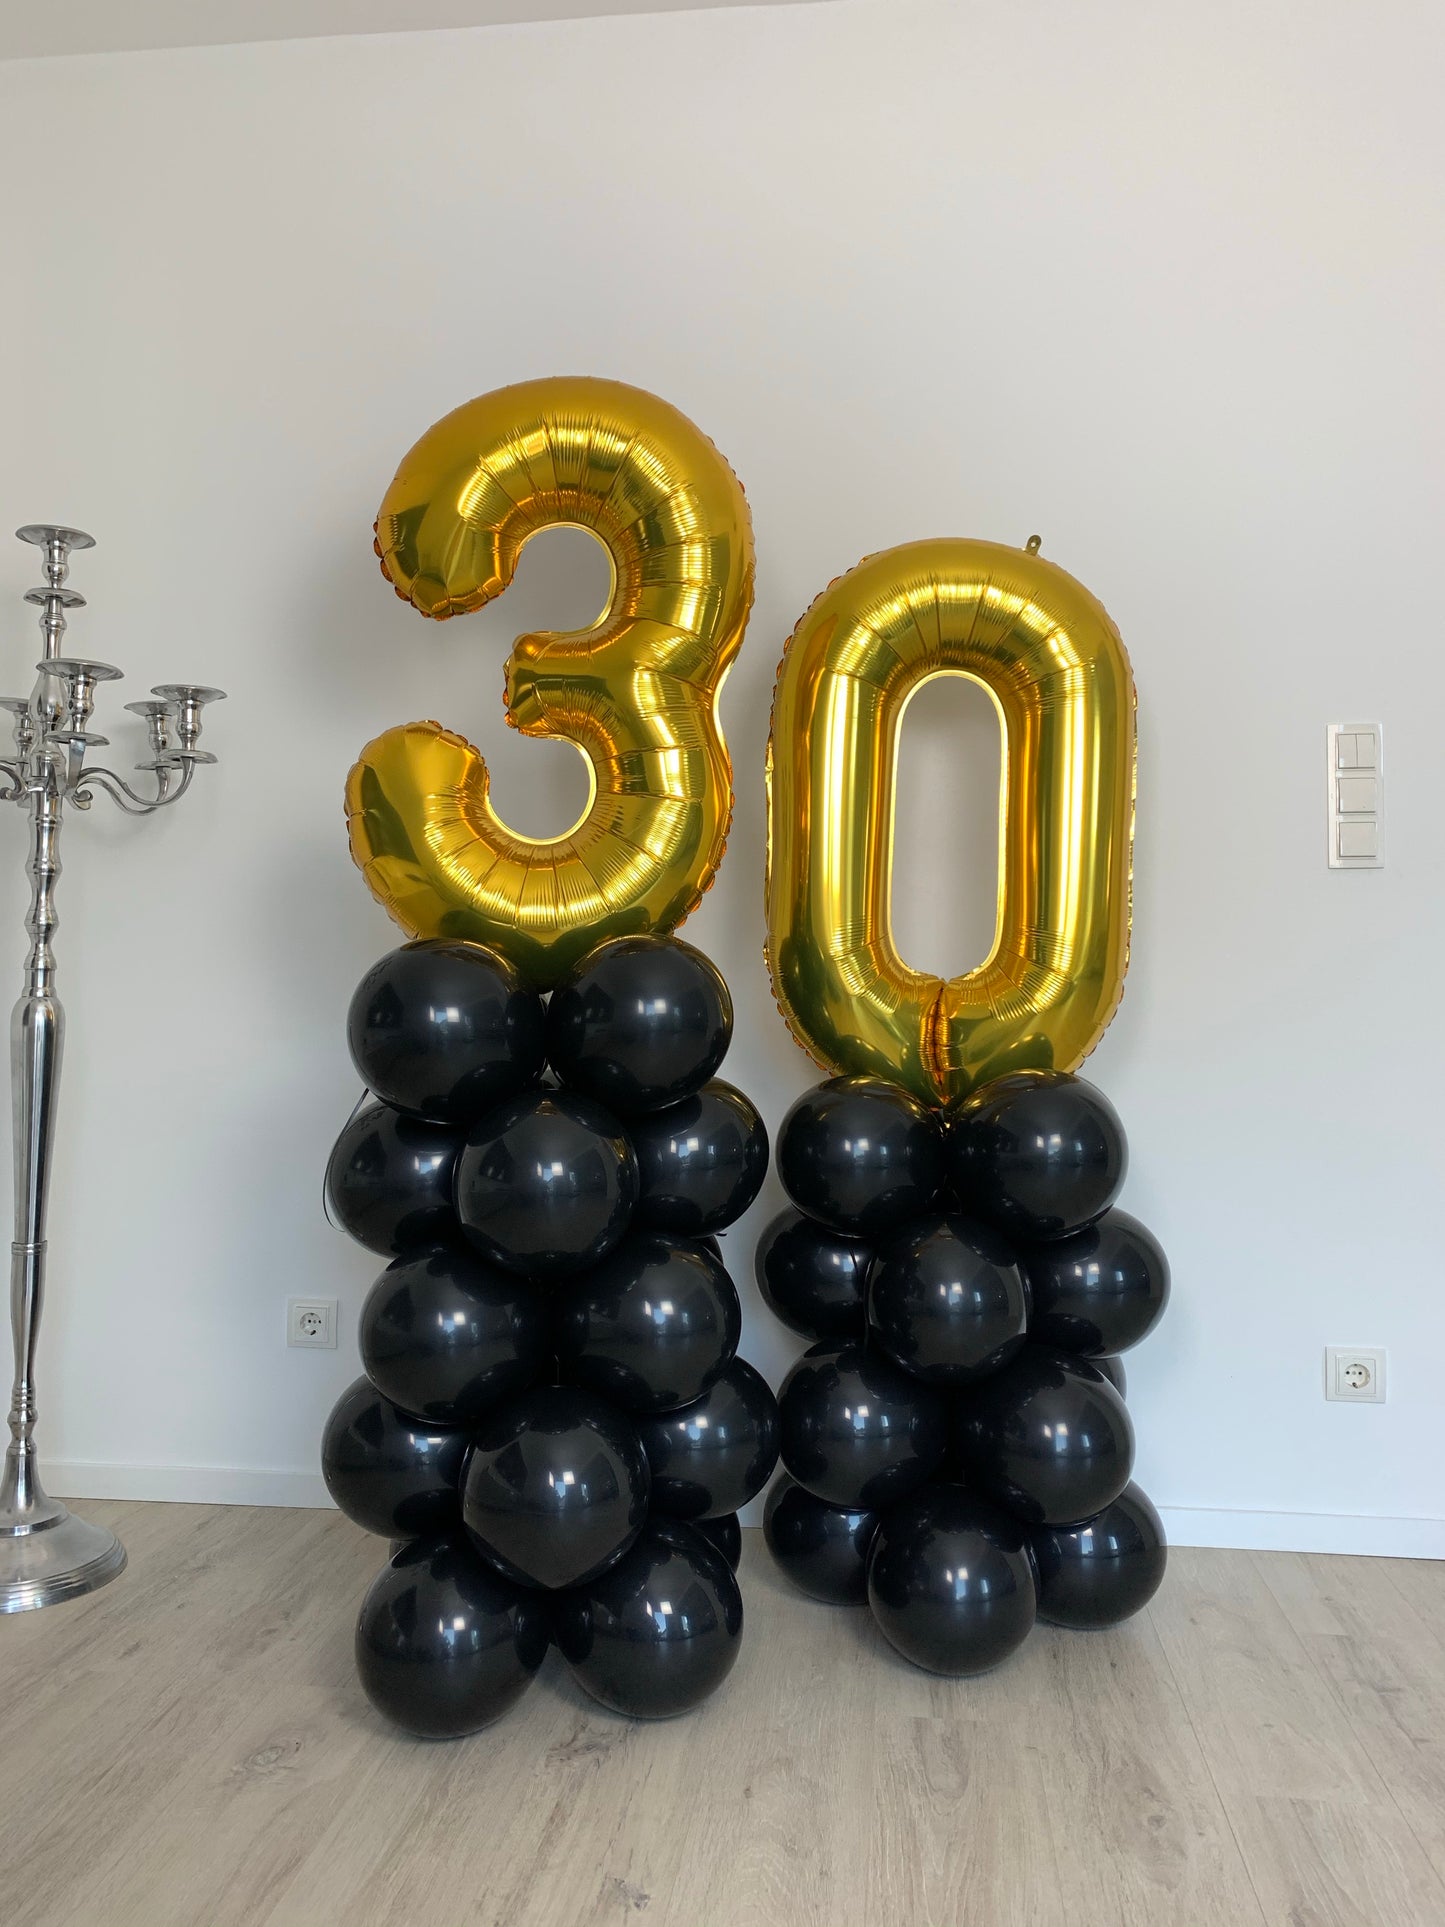 Ballon Big Birthday - Adult